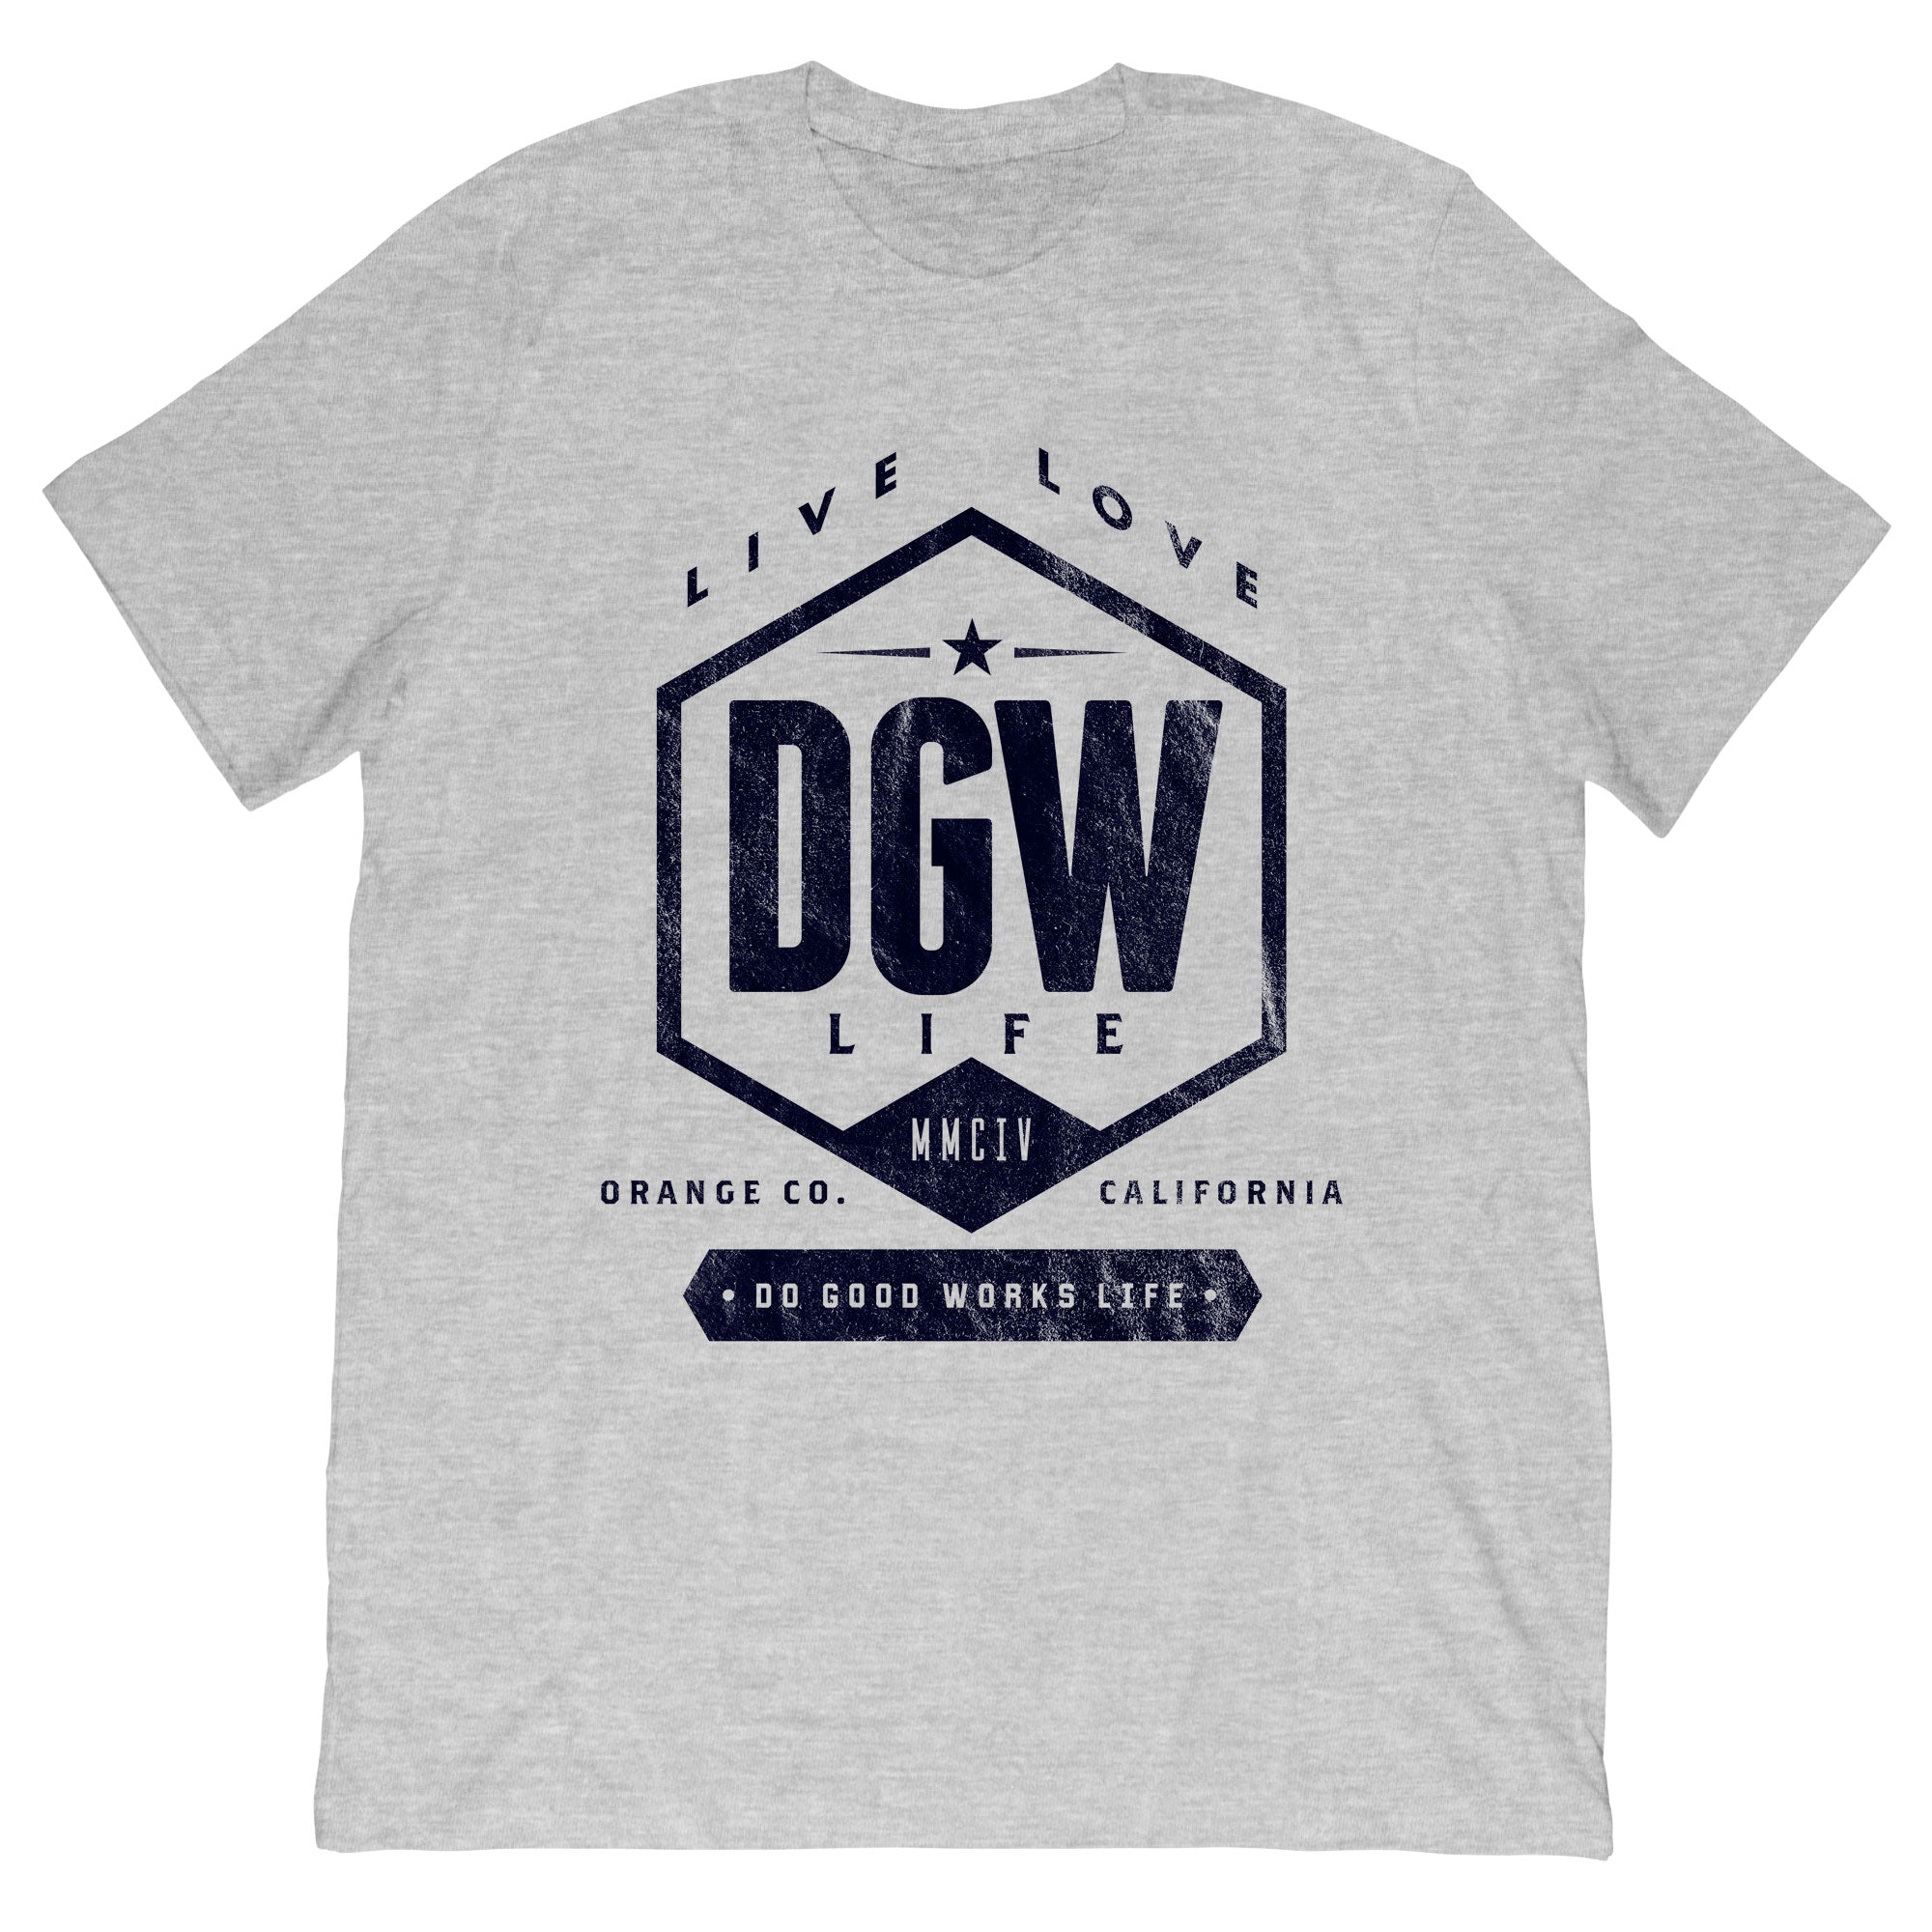 DGW - LiveLove